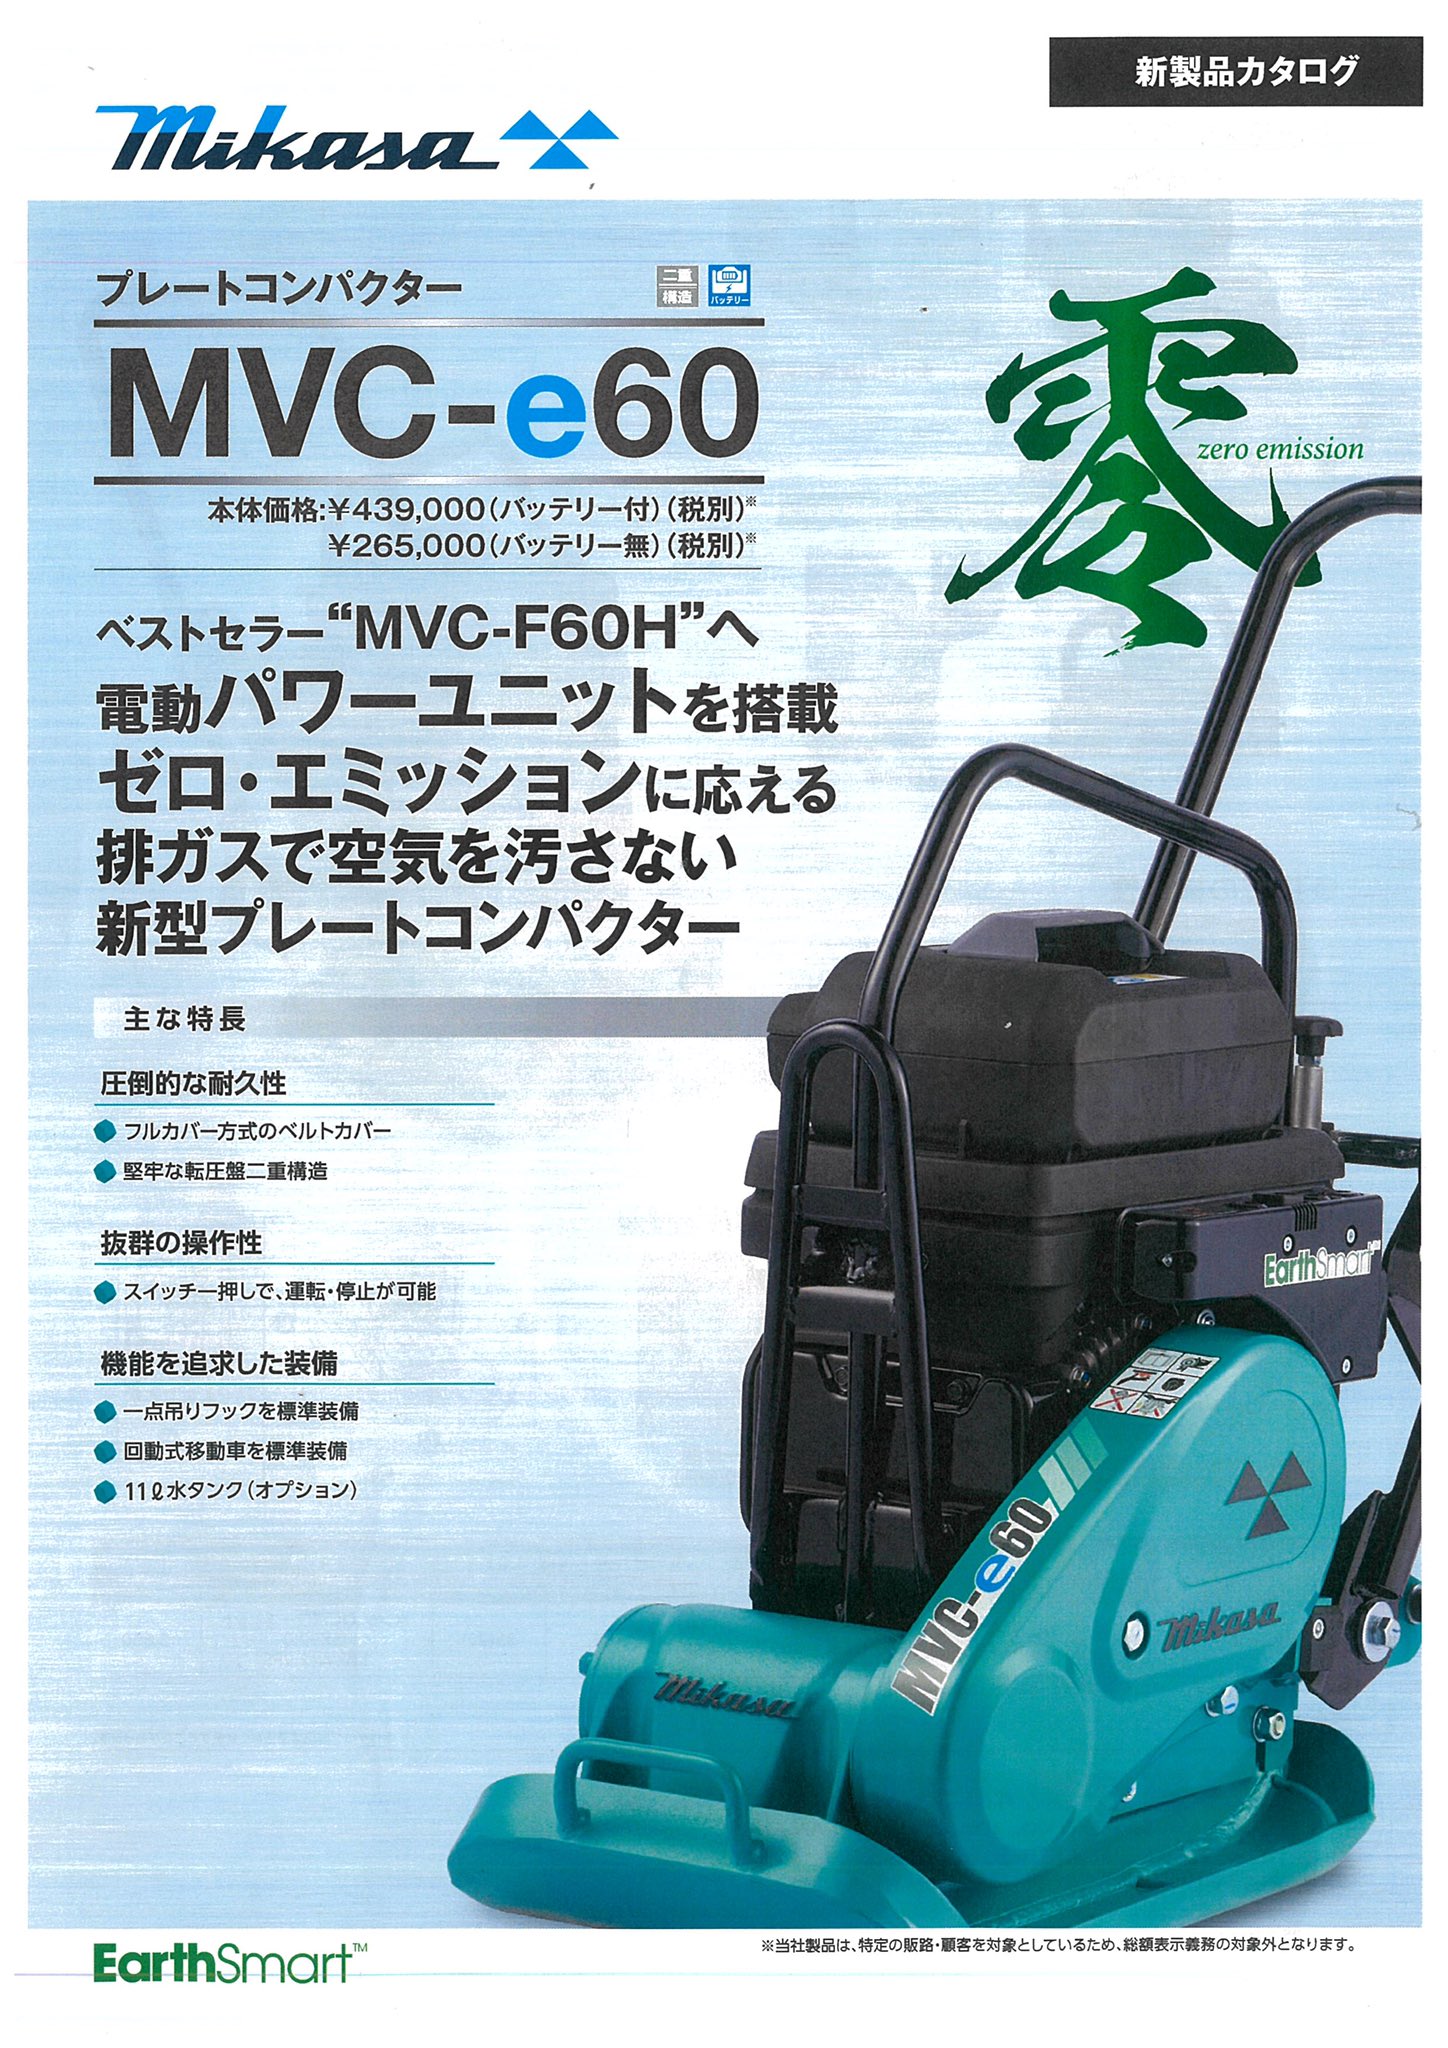 三笠産業〉プレートコンパクター MVC-e60電動パワーユニットバッテリー無【オススメ】